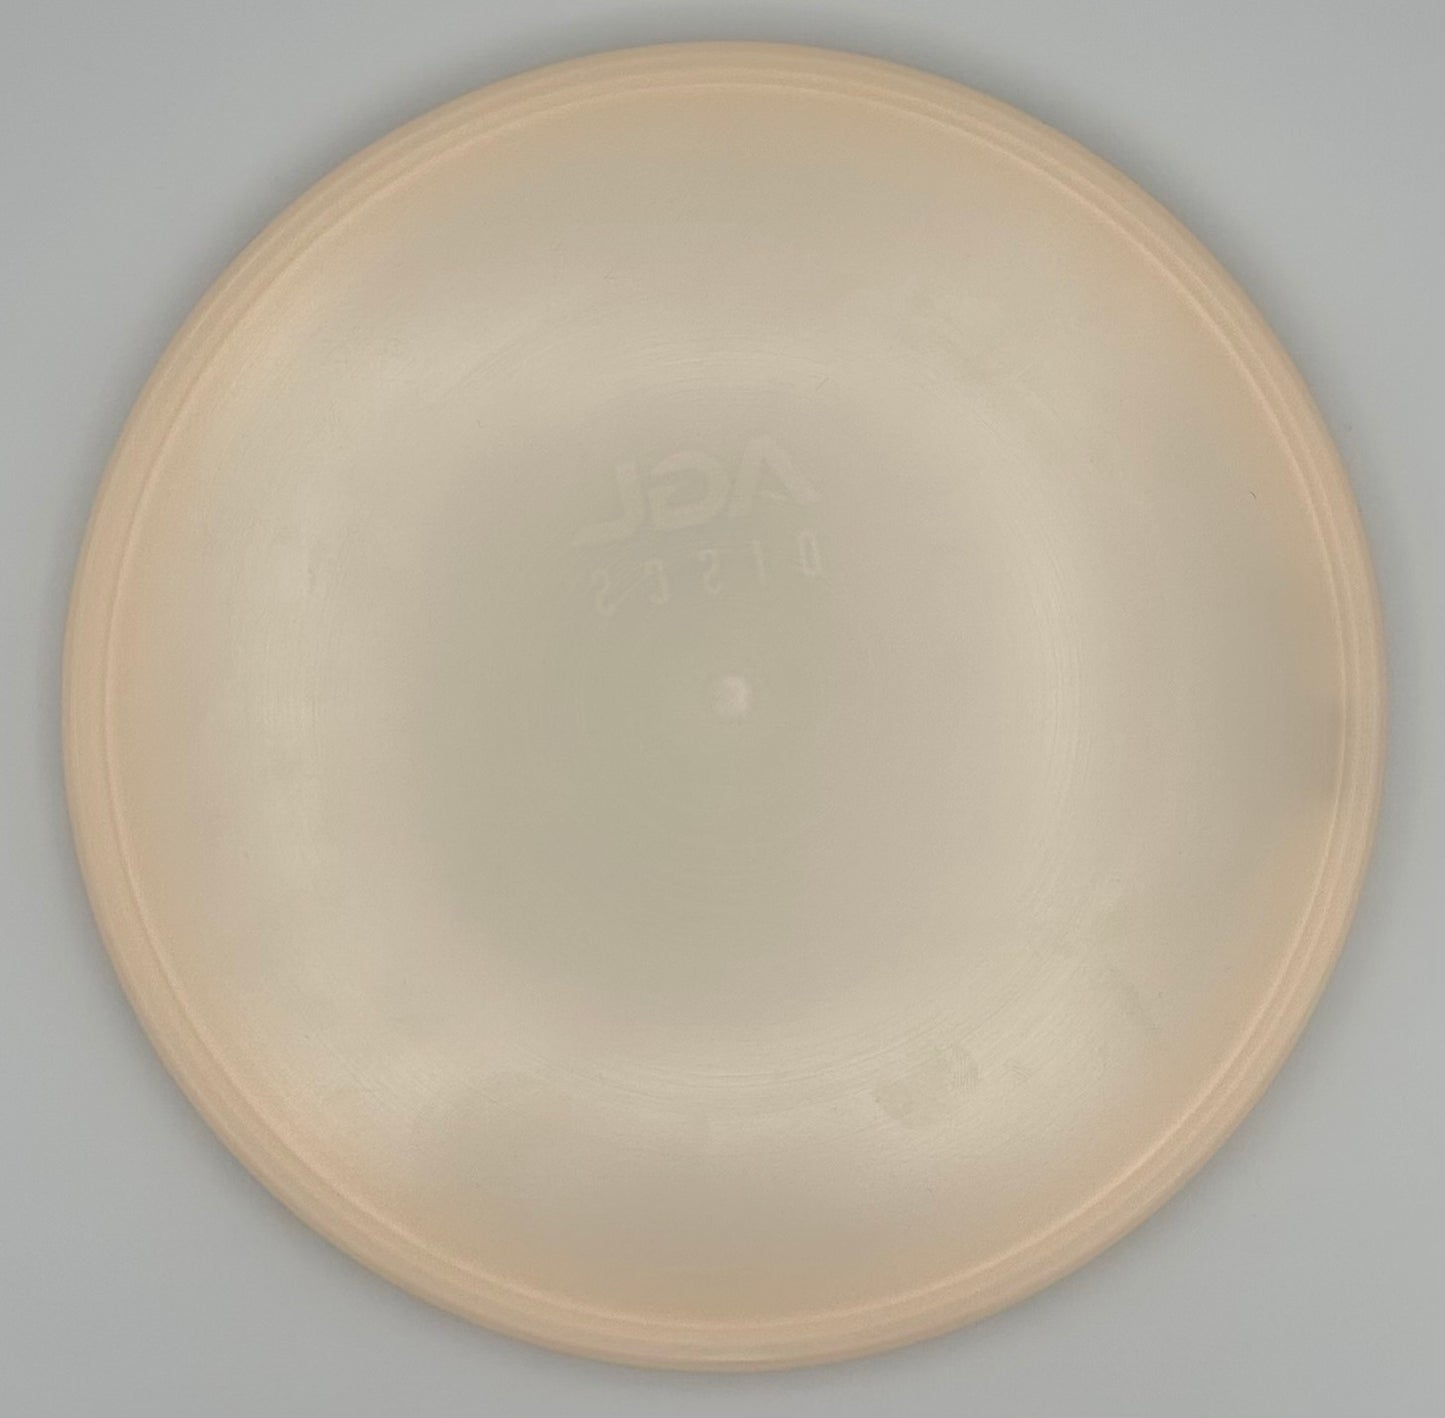 AGL Discs - Blank Canvas Baobab